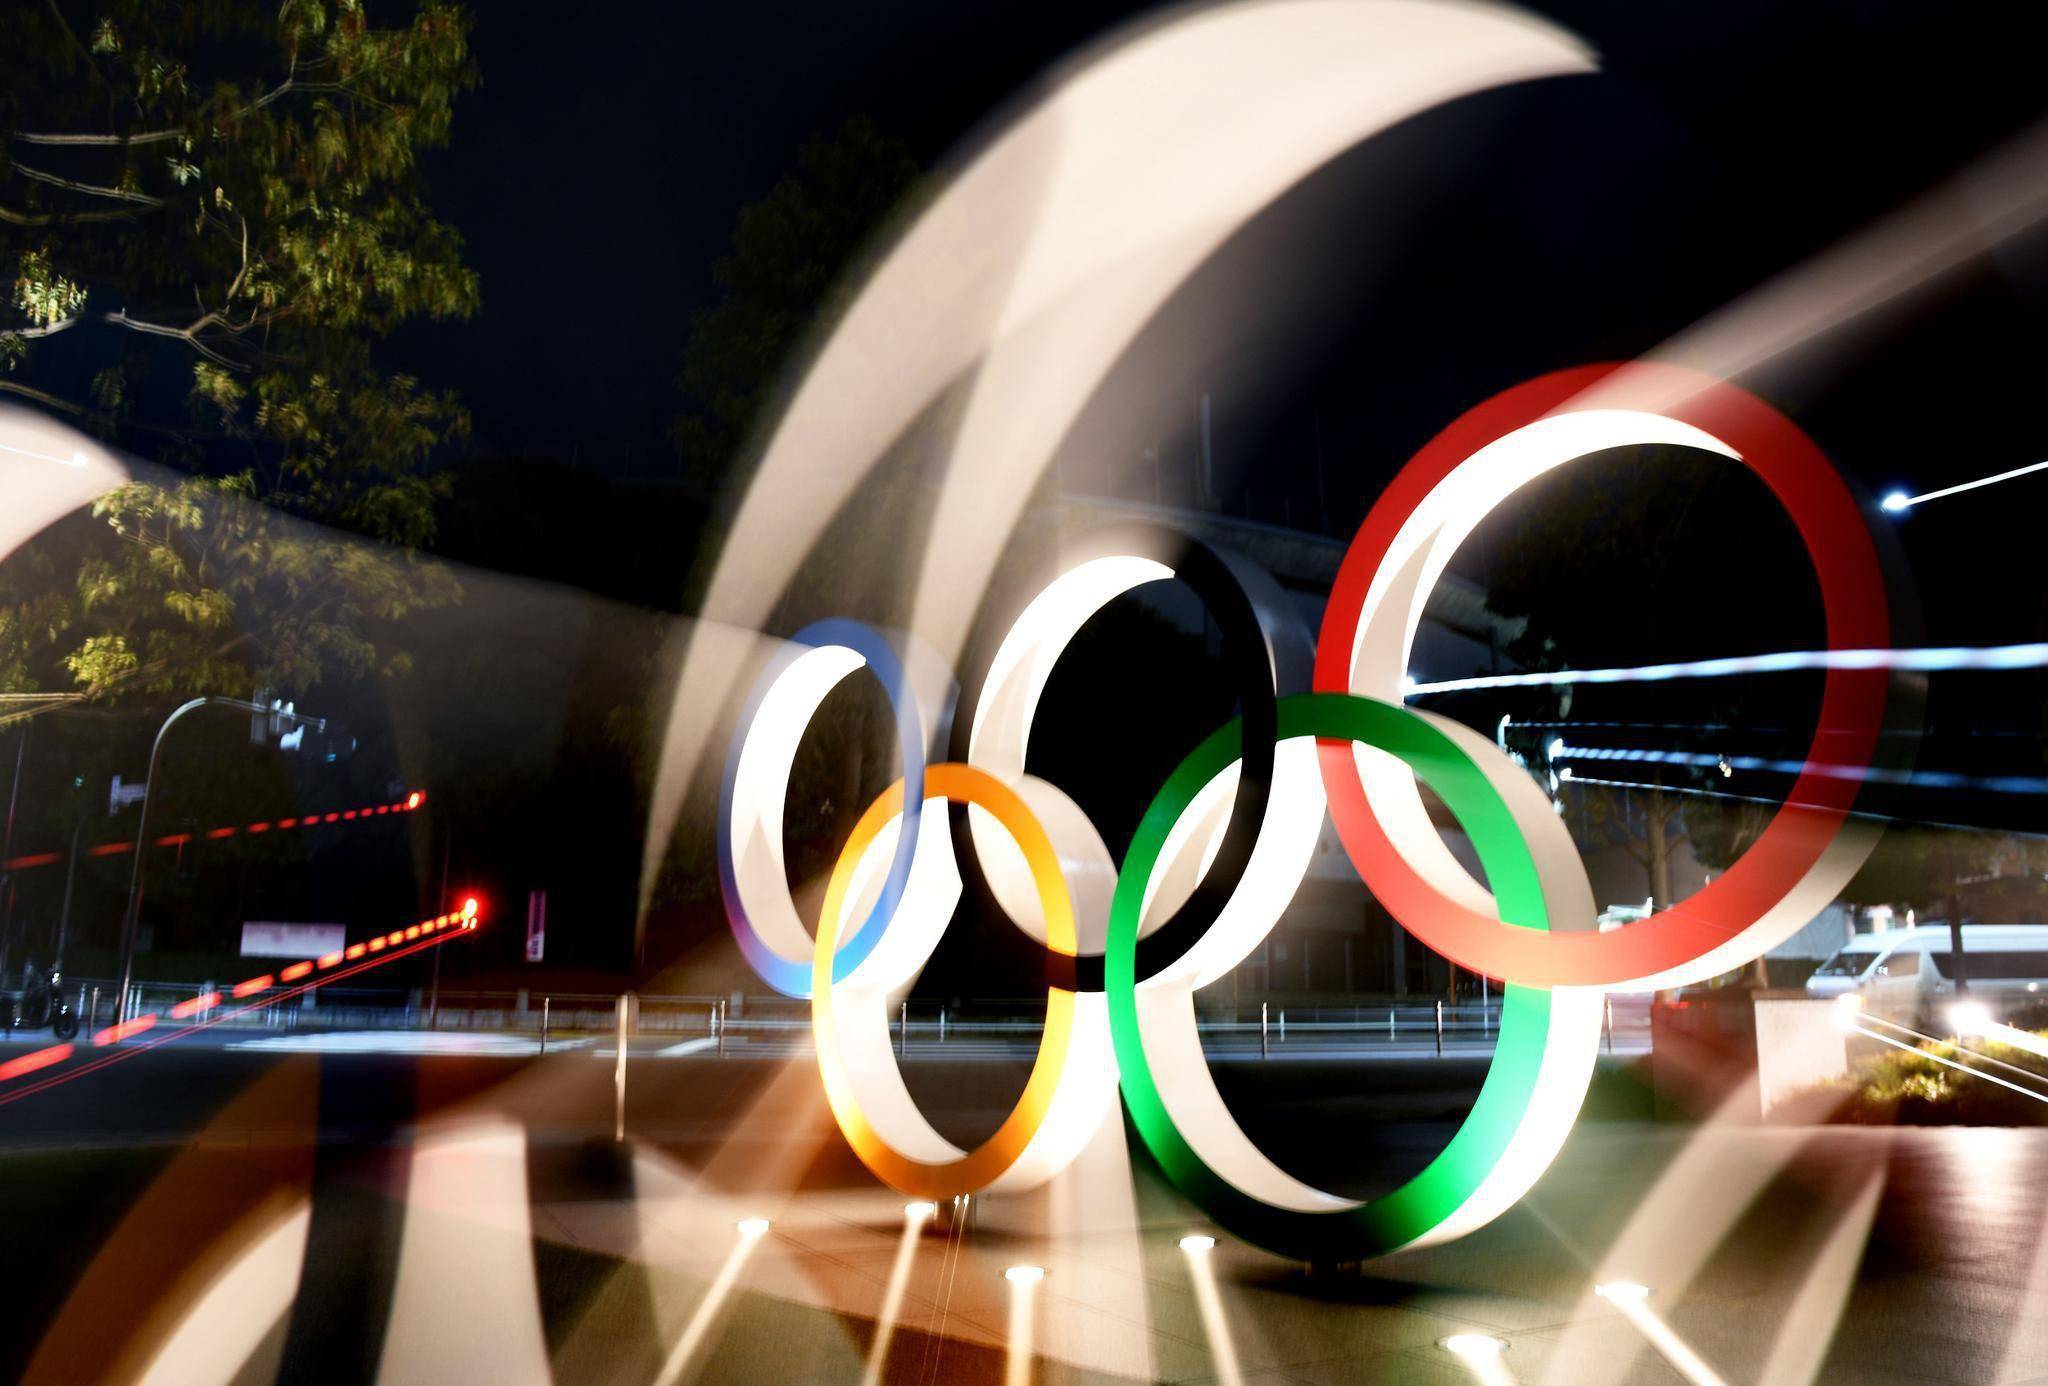 东京奥运会同时宣布将延期一年举行,然而目前疫情还并未完全结束,那么